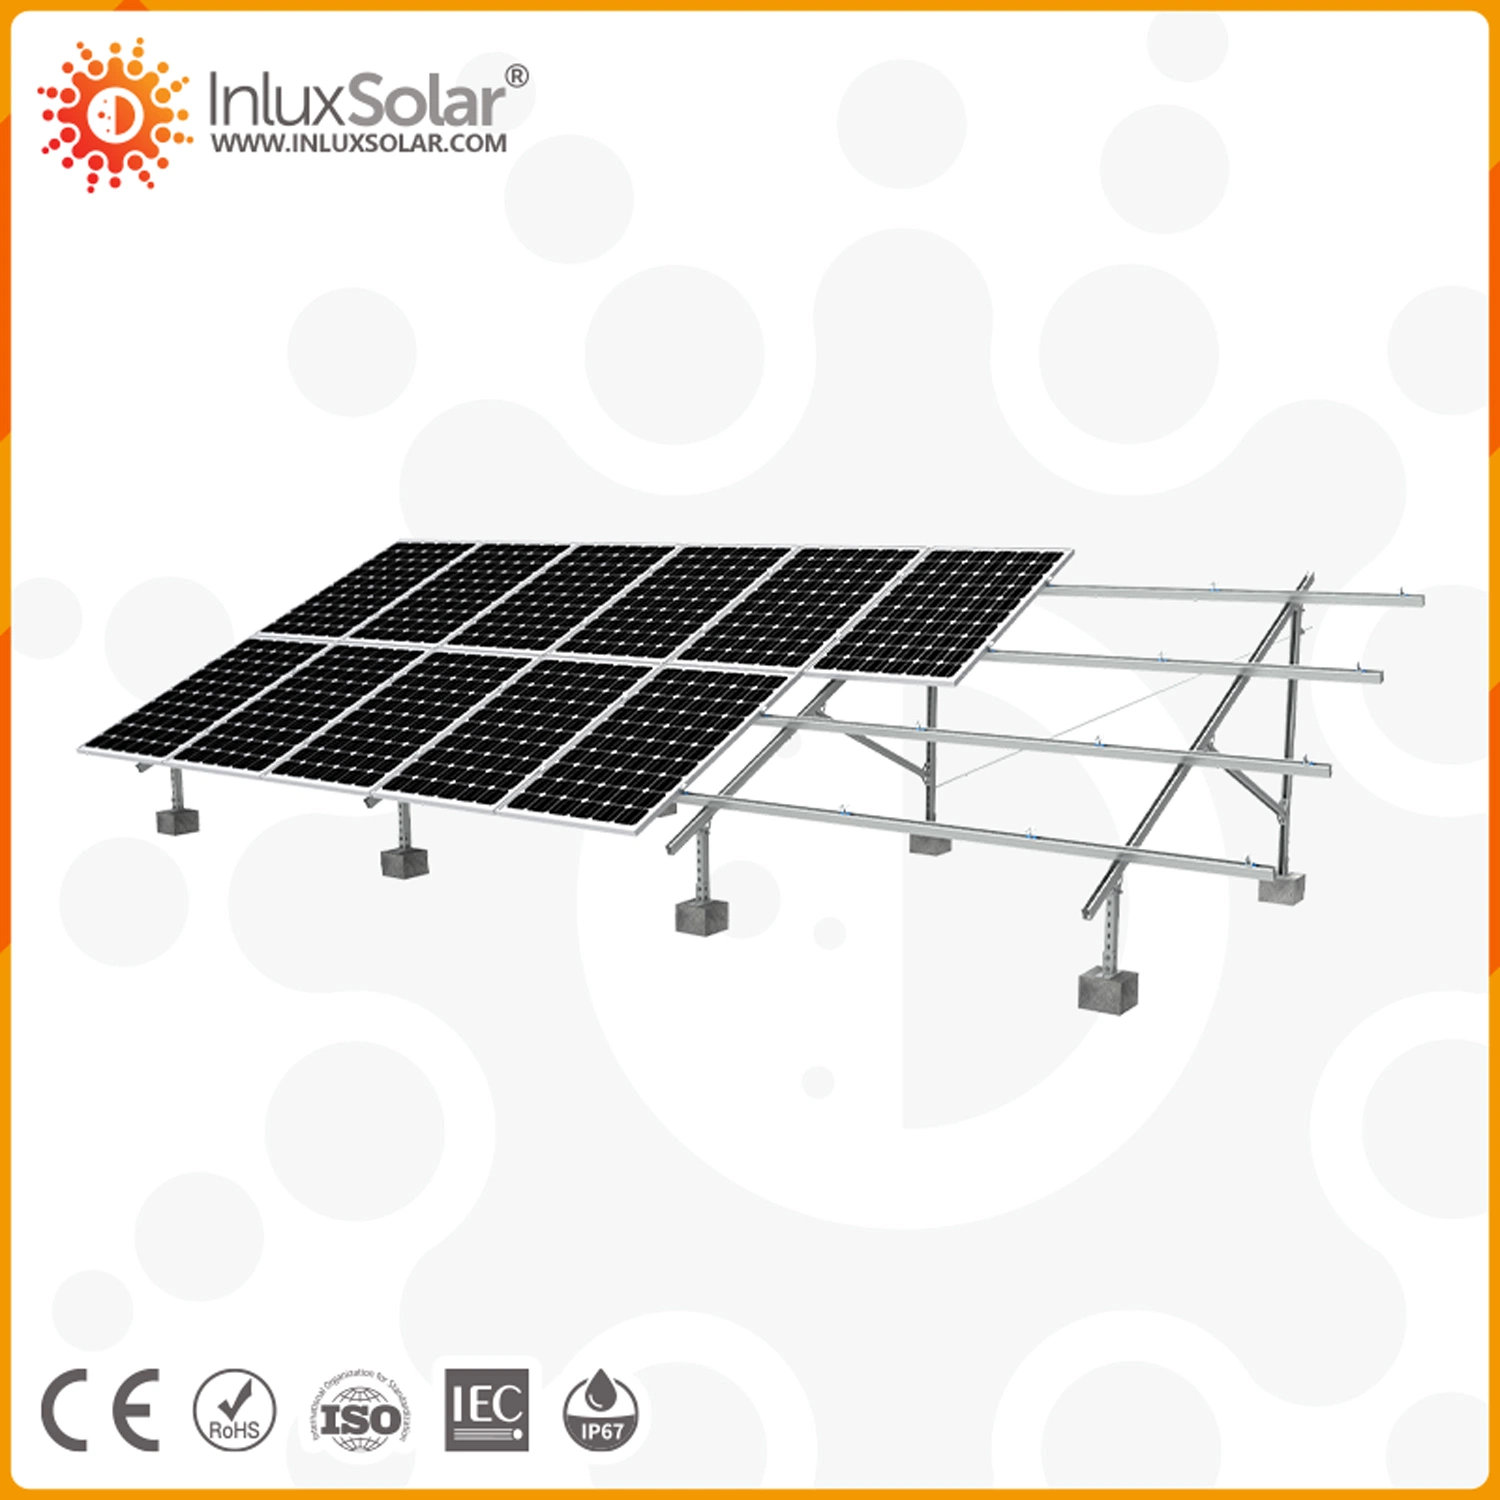 نظام الطاقة الشمسية بدون طاقة بقدرة 10 كيلوواط، نظام الطاقة الشمسية بقدرة 30 كيلوواط منتجات الطاقة الشمسية من الشبكة للاستخدام المنزلي